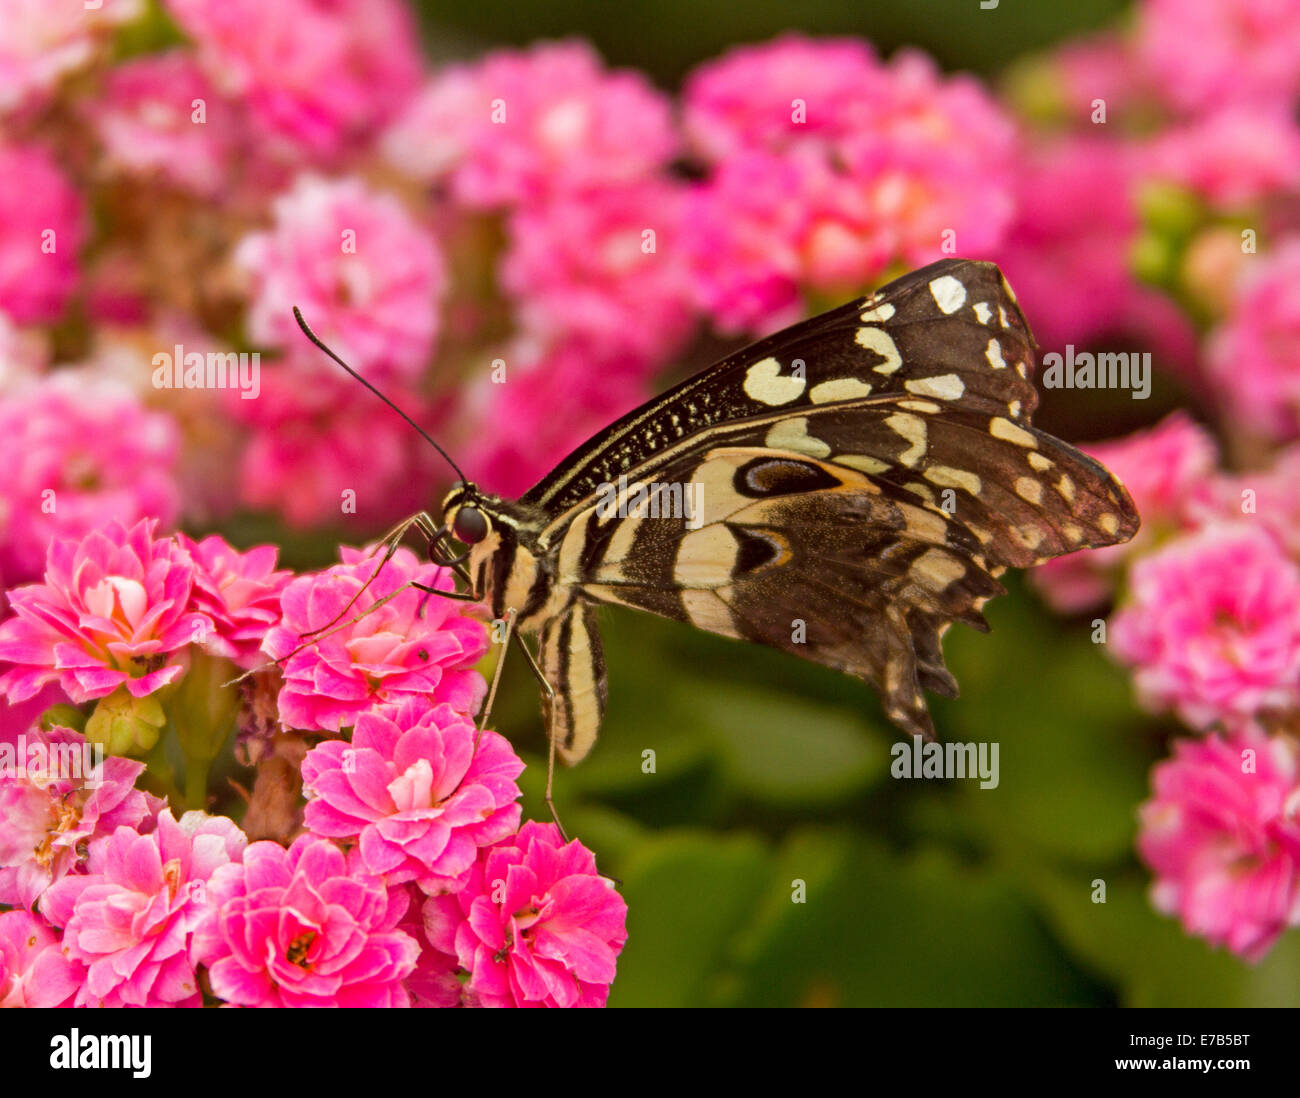 Joli papillon noir et blanc se nourrit de grappe de fleurs rose vif Banque D'Images